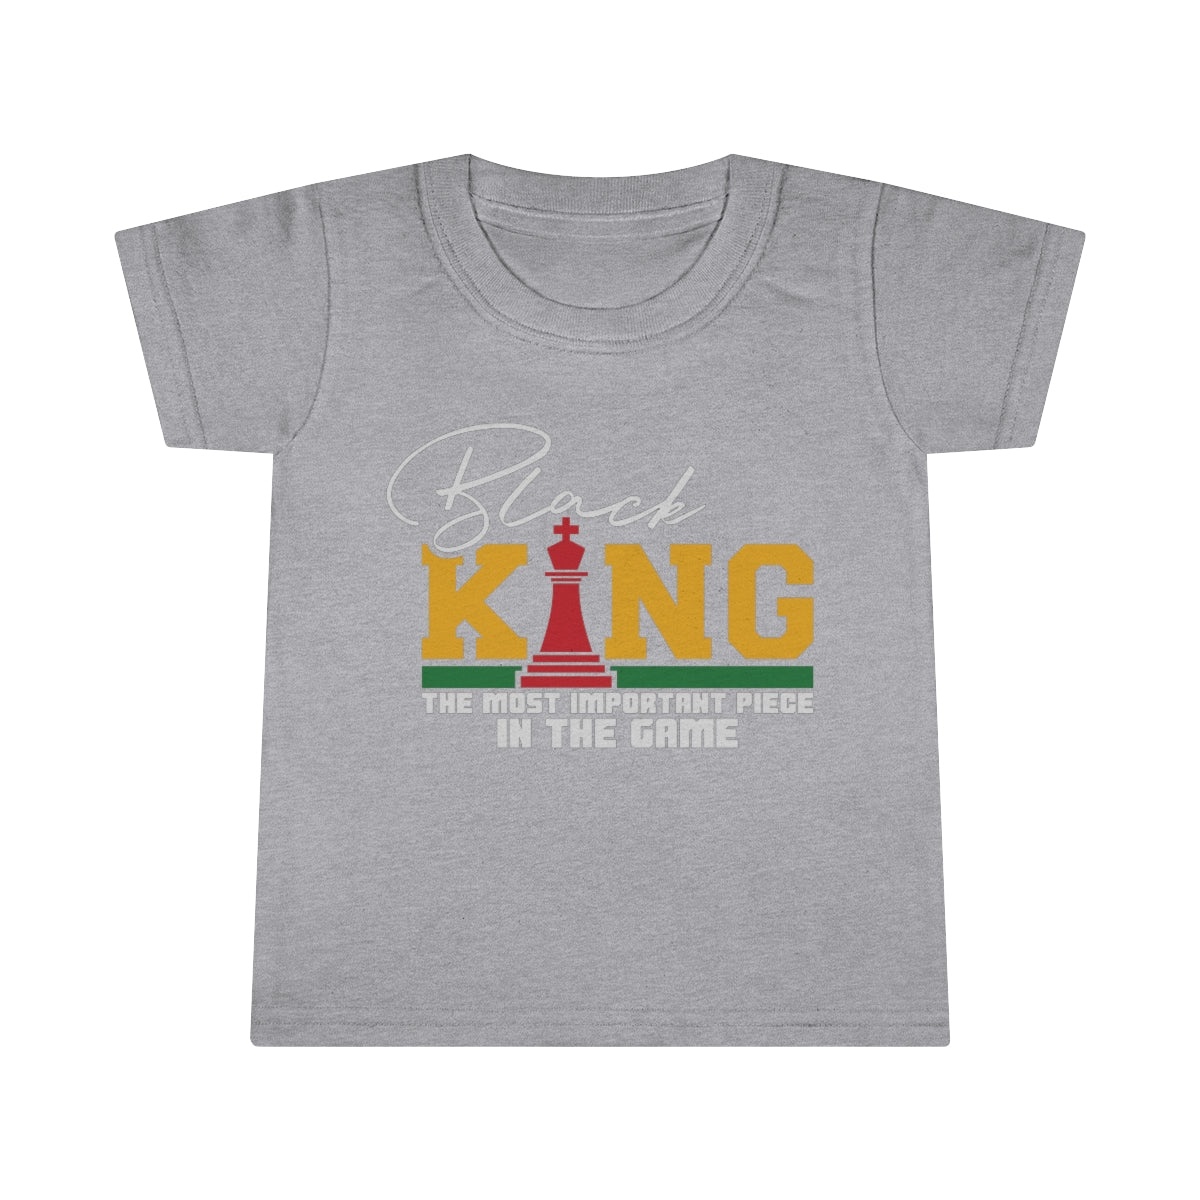 Black King Toddler T-shirt